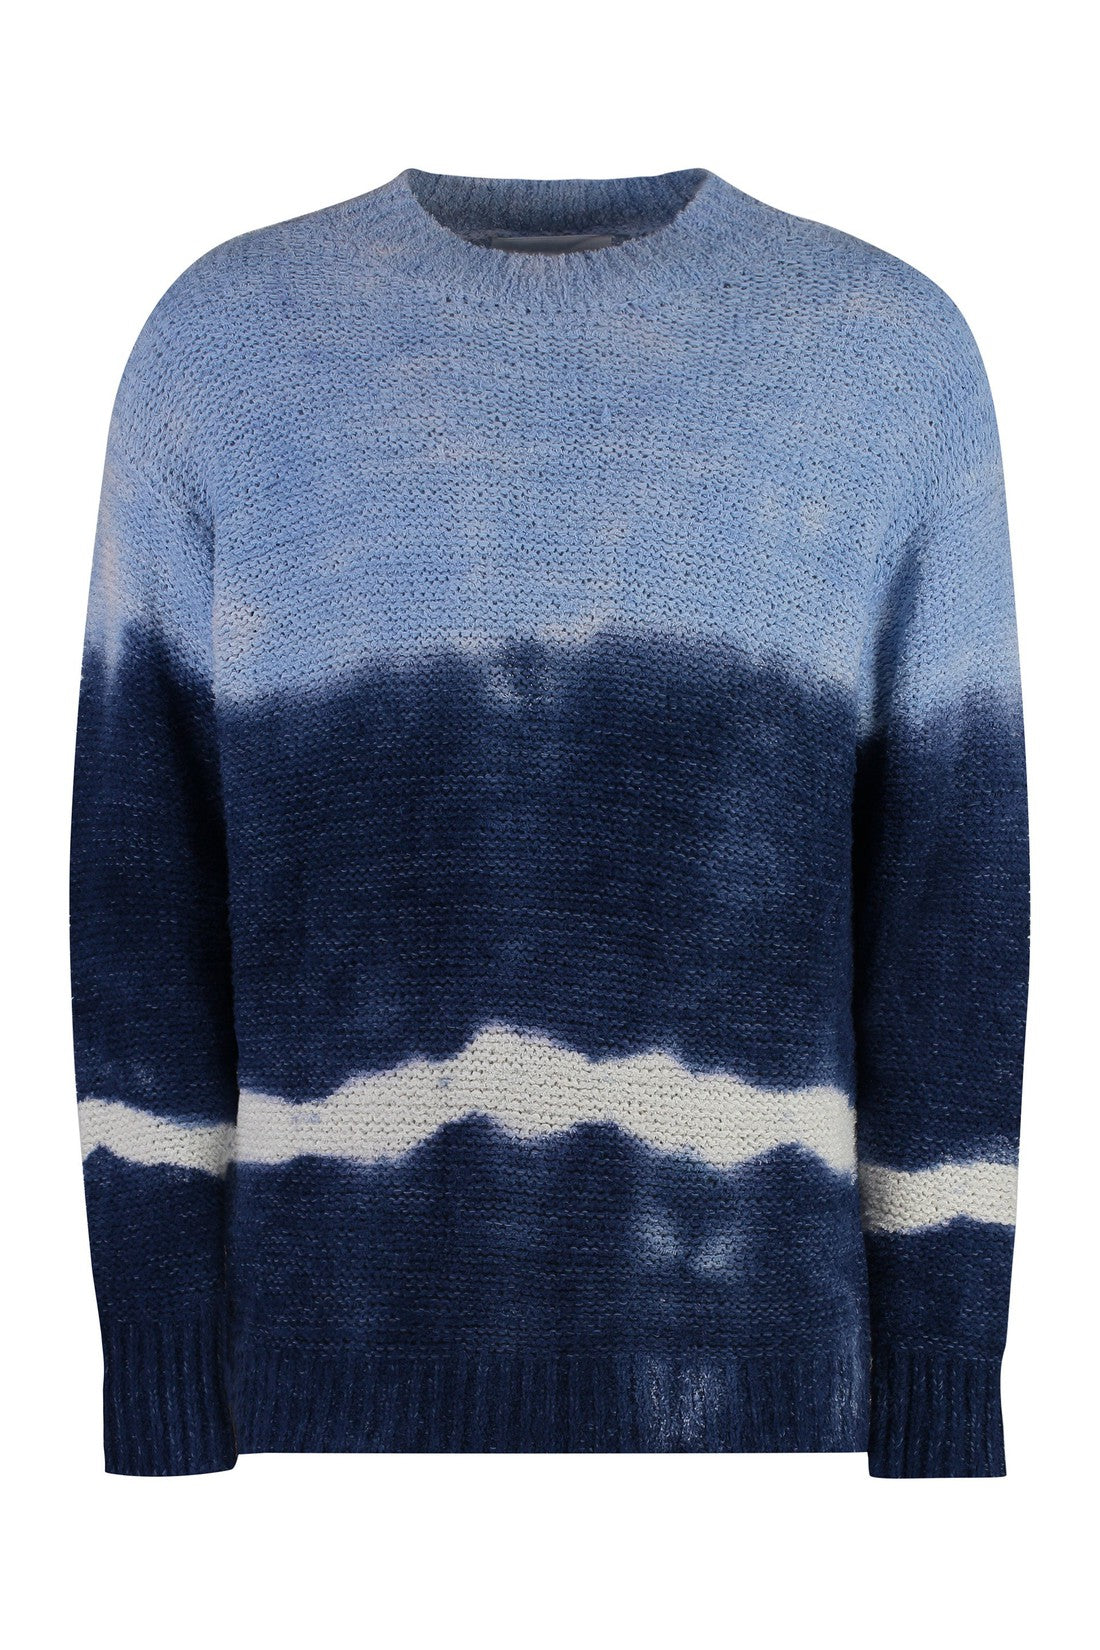 Marant-OUTLET-SALE-Henley Cotton blend crew-neck sweater-ARCHIVIST